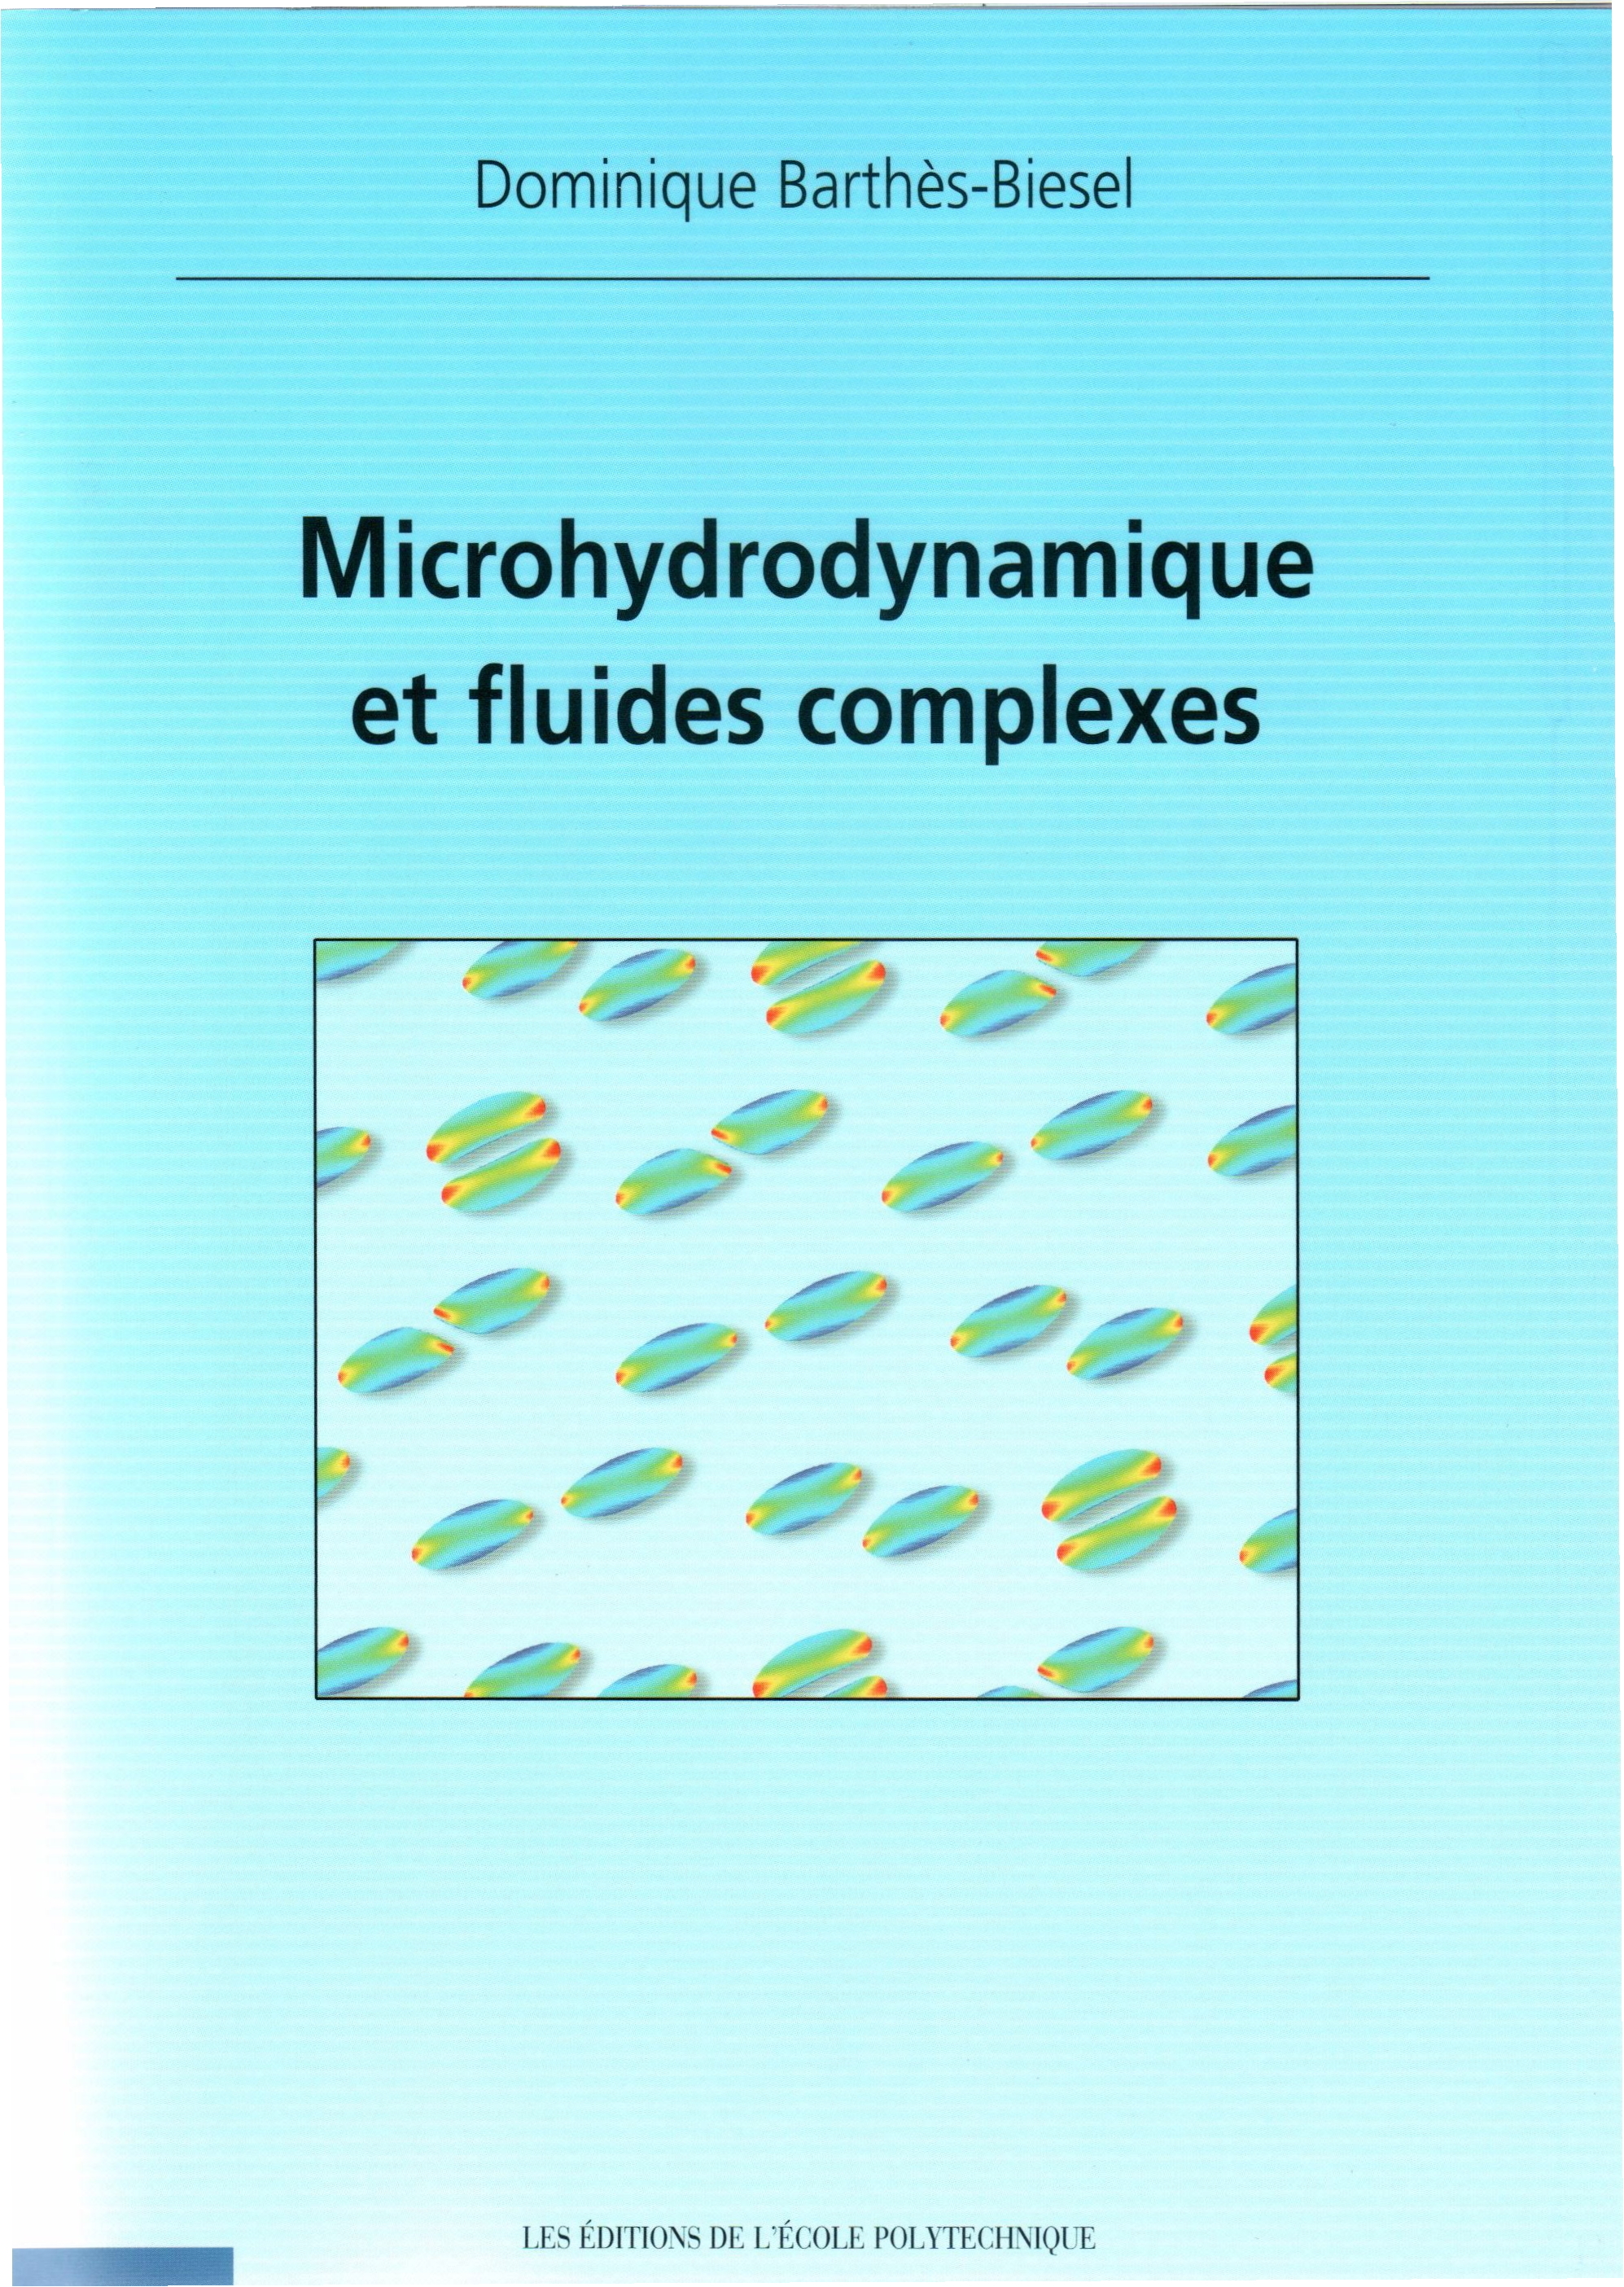 Book : Microhydrodynamique et Fluides Complexes